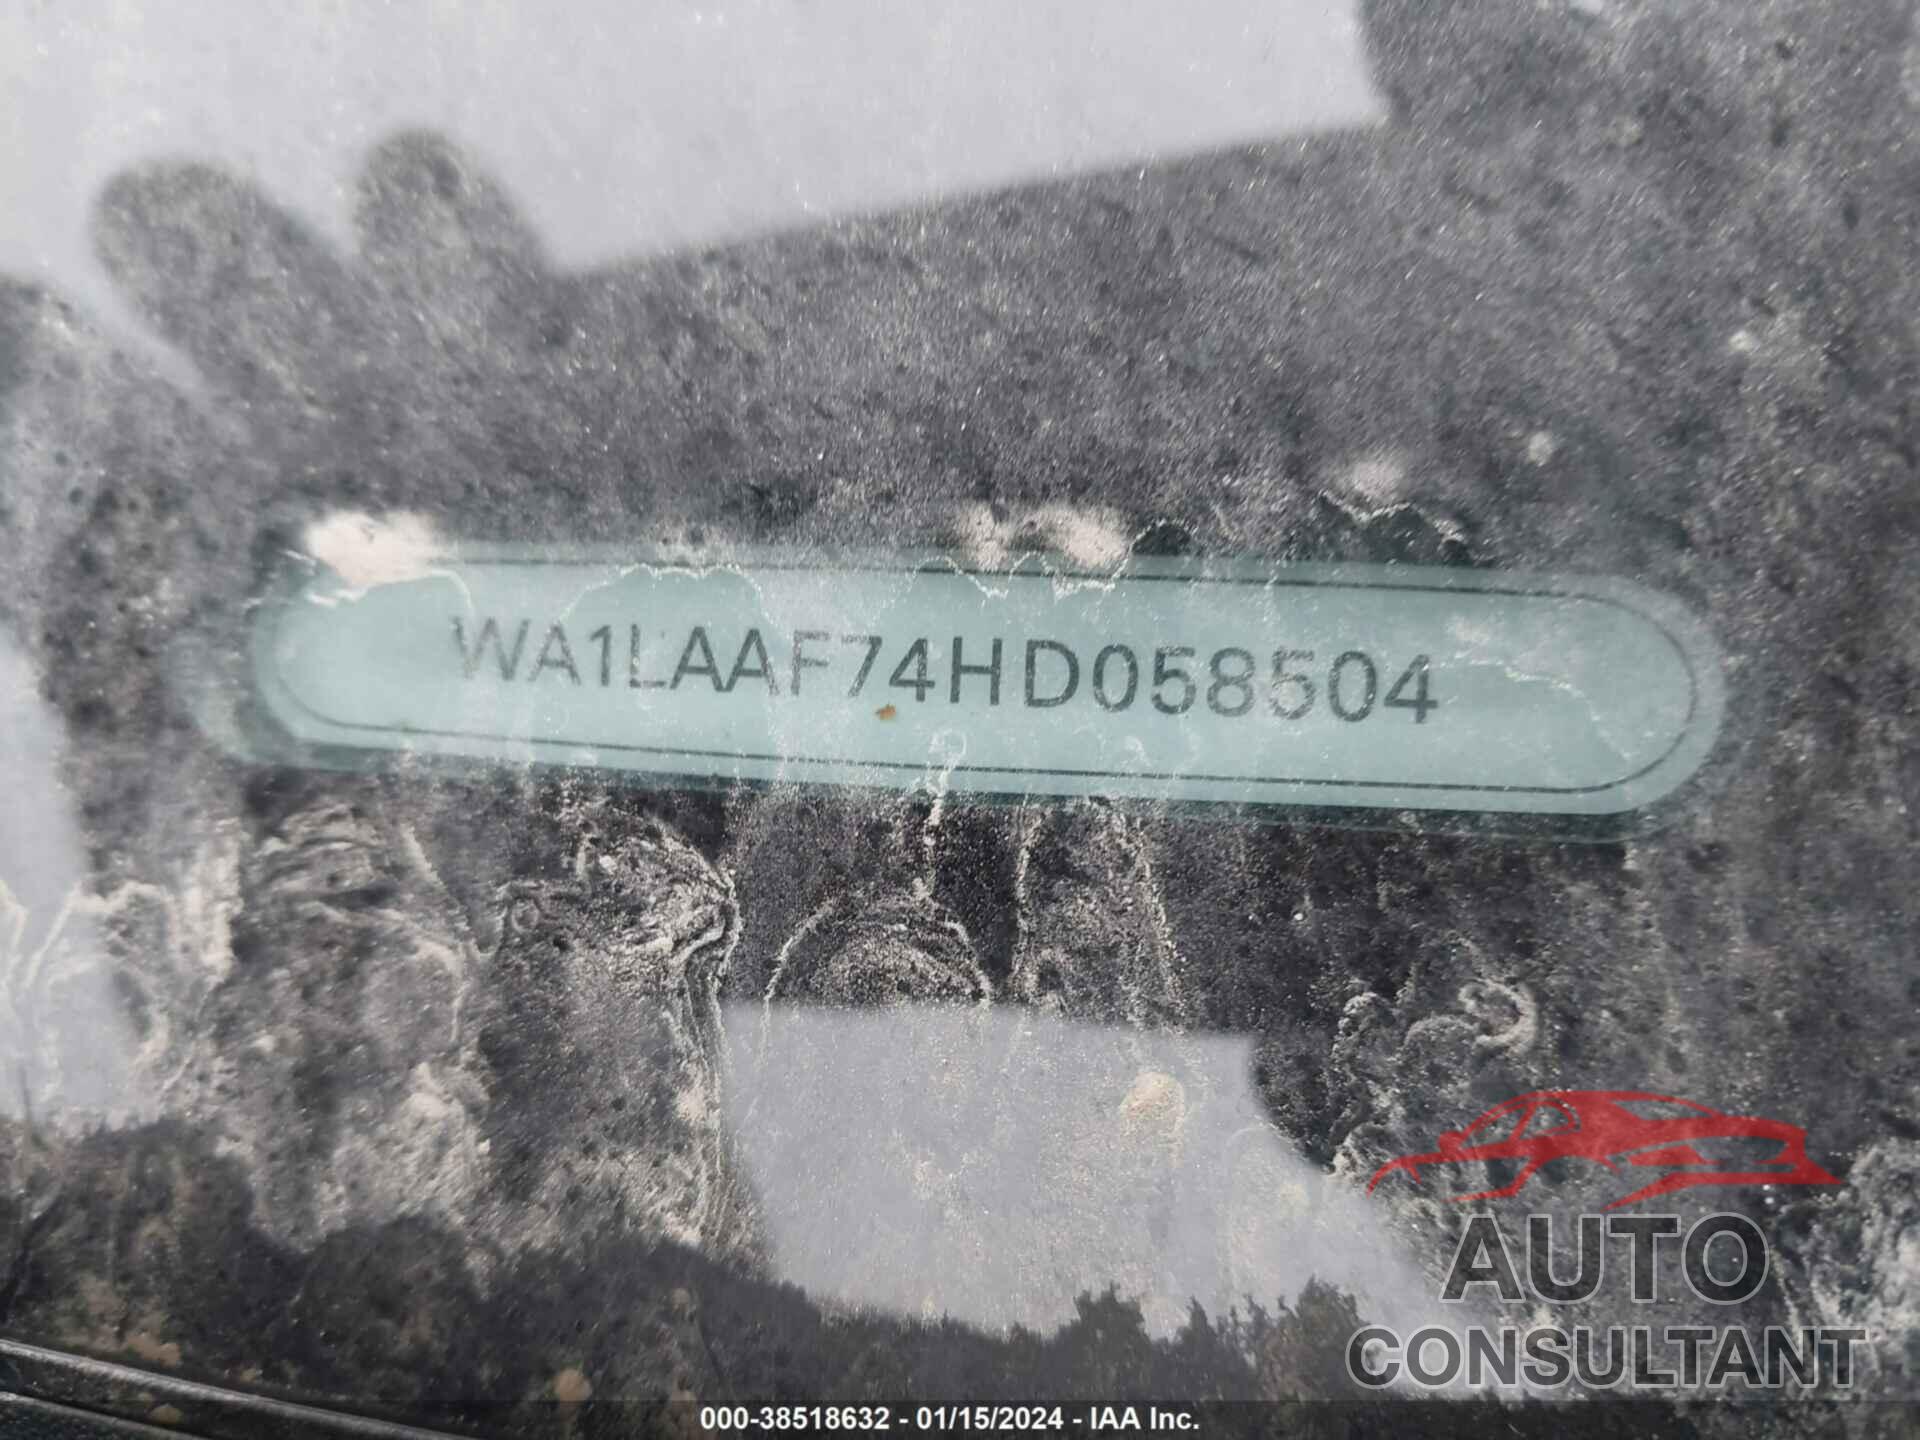 AUDI Q7 2017 - WA1LAAF74HD058504